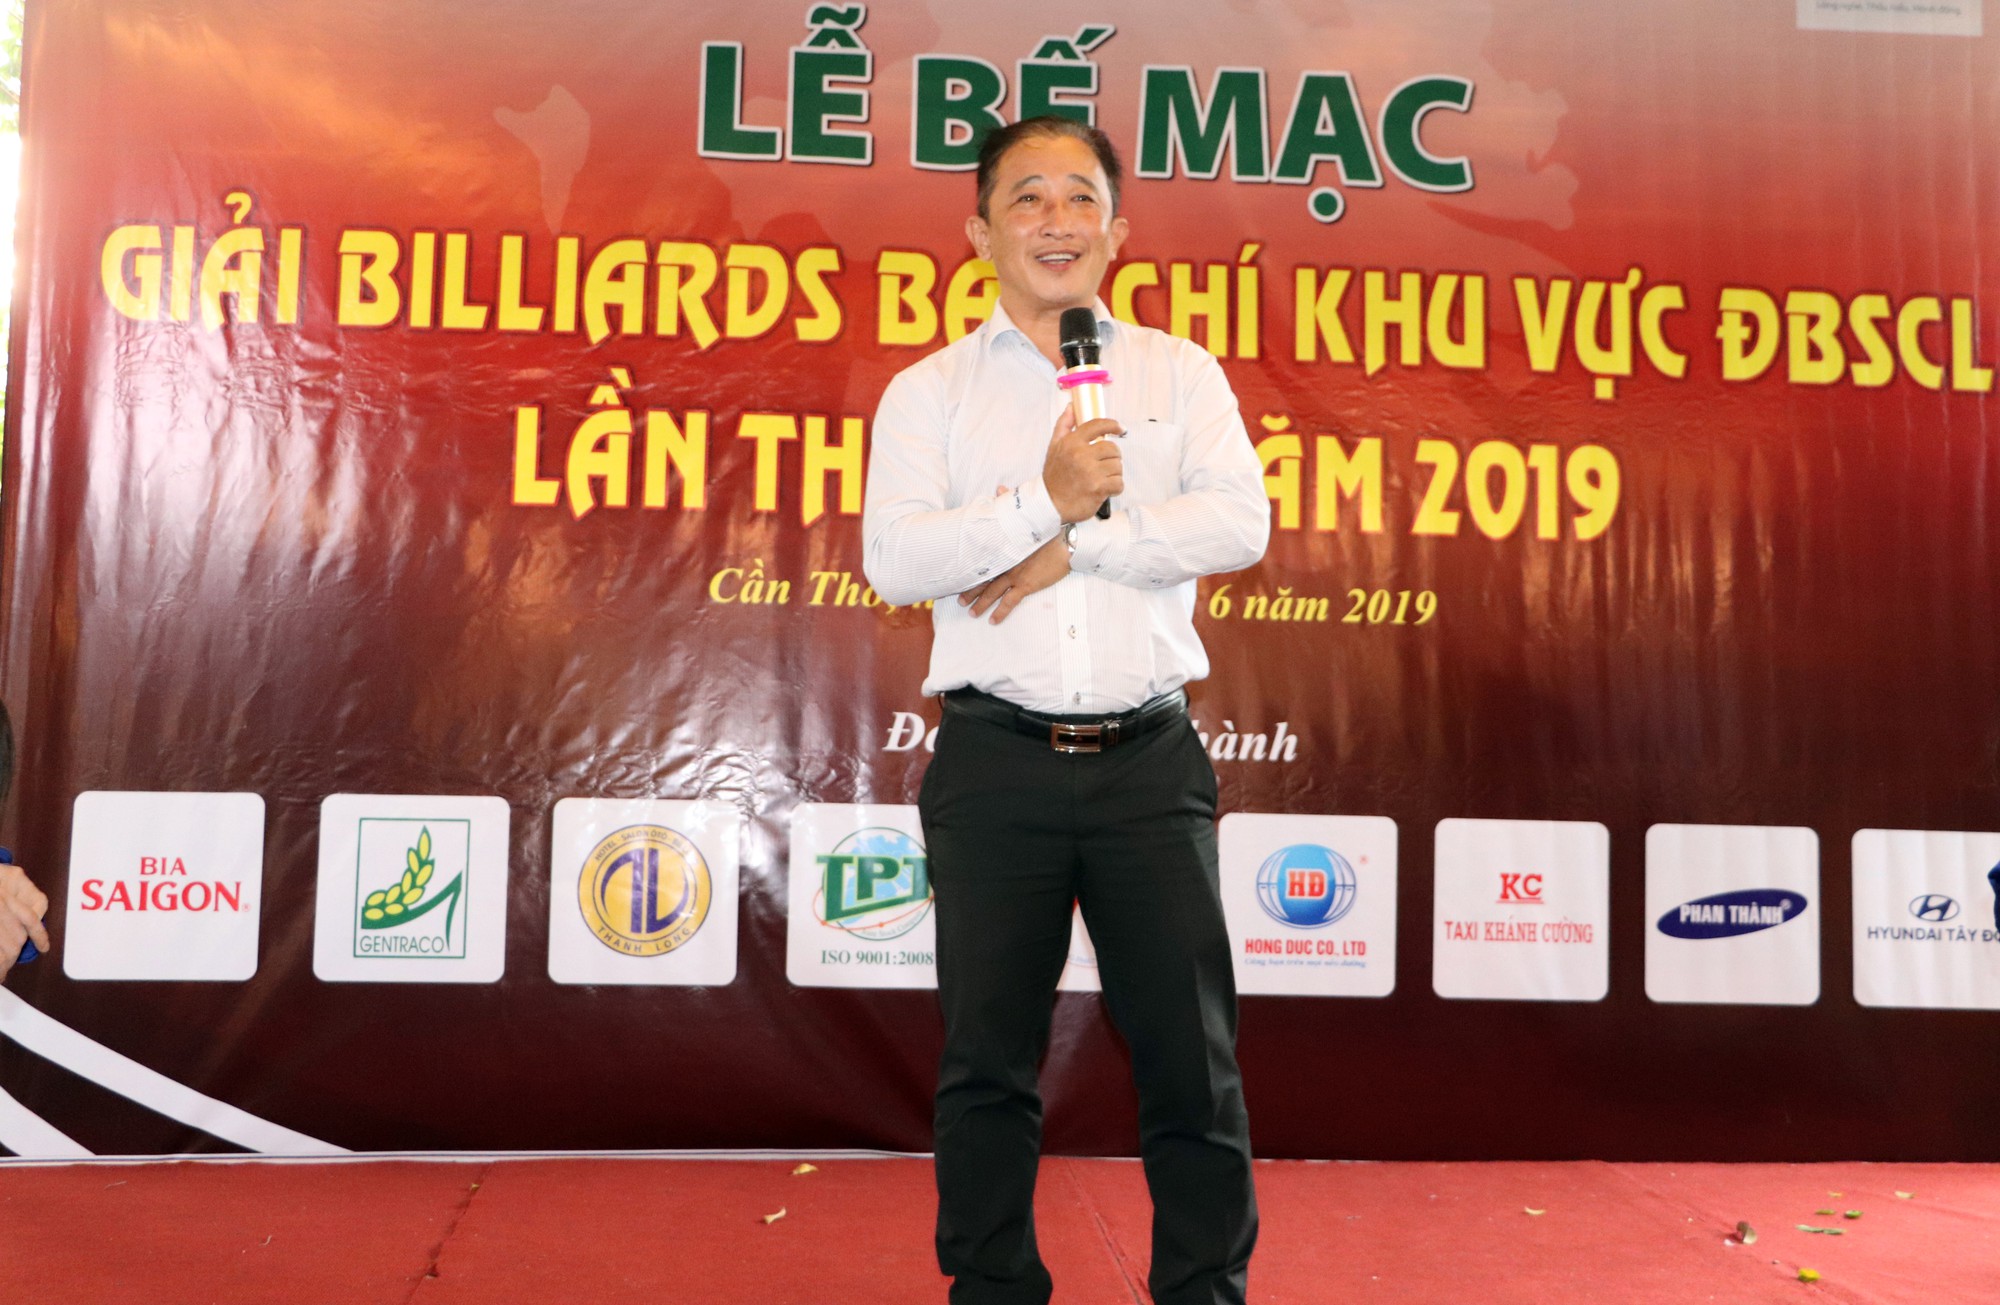 Giải Bida Báo chí ĐBSCL lần thứ 12 do Báo Người Lao Động tổ chức thành công tốt đẹp - Ảnh 9.